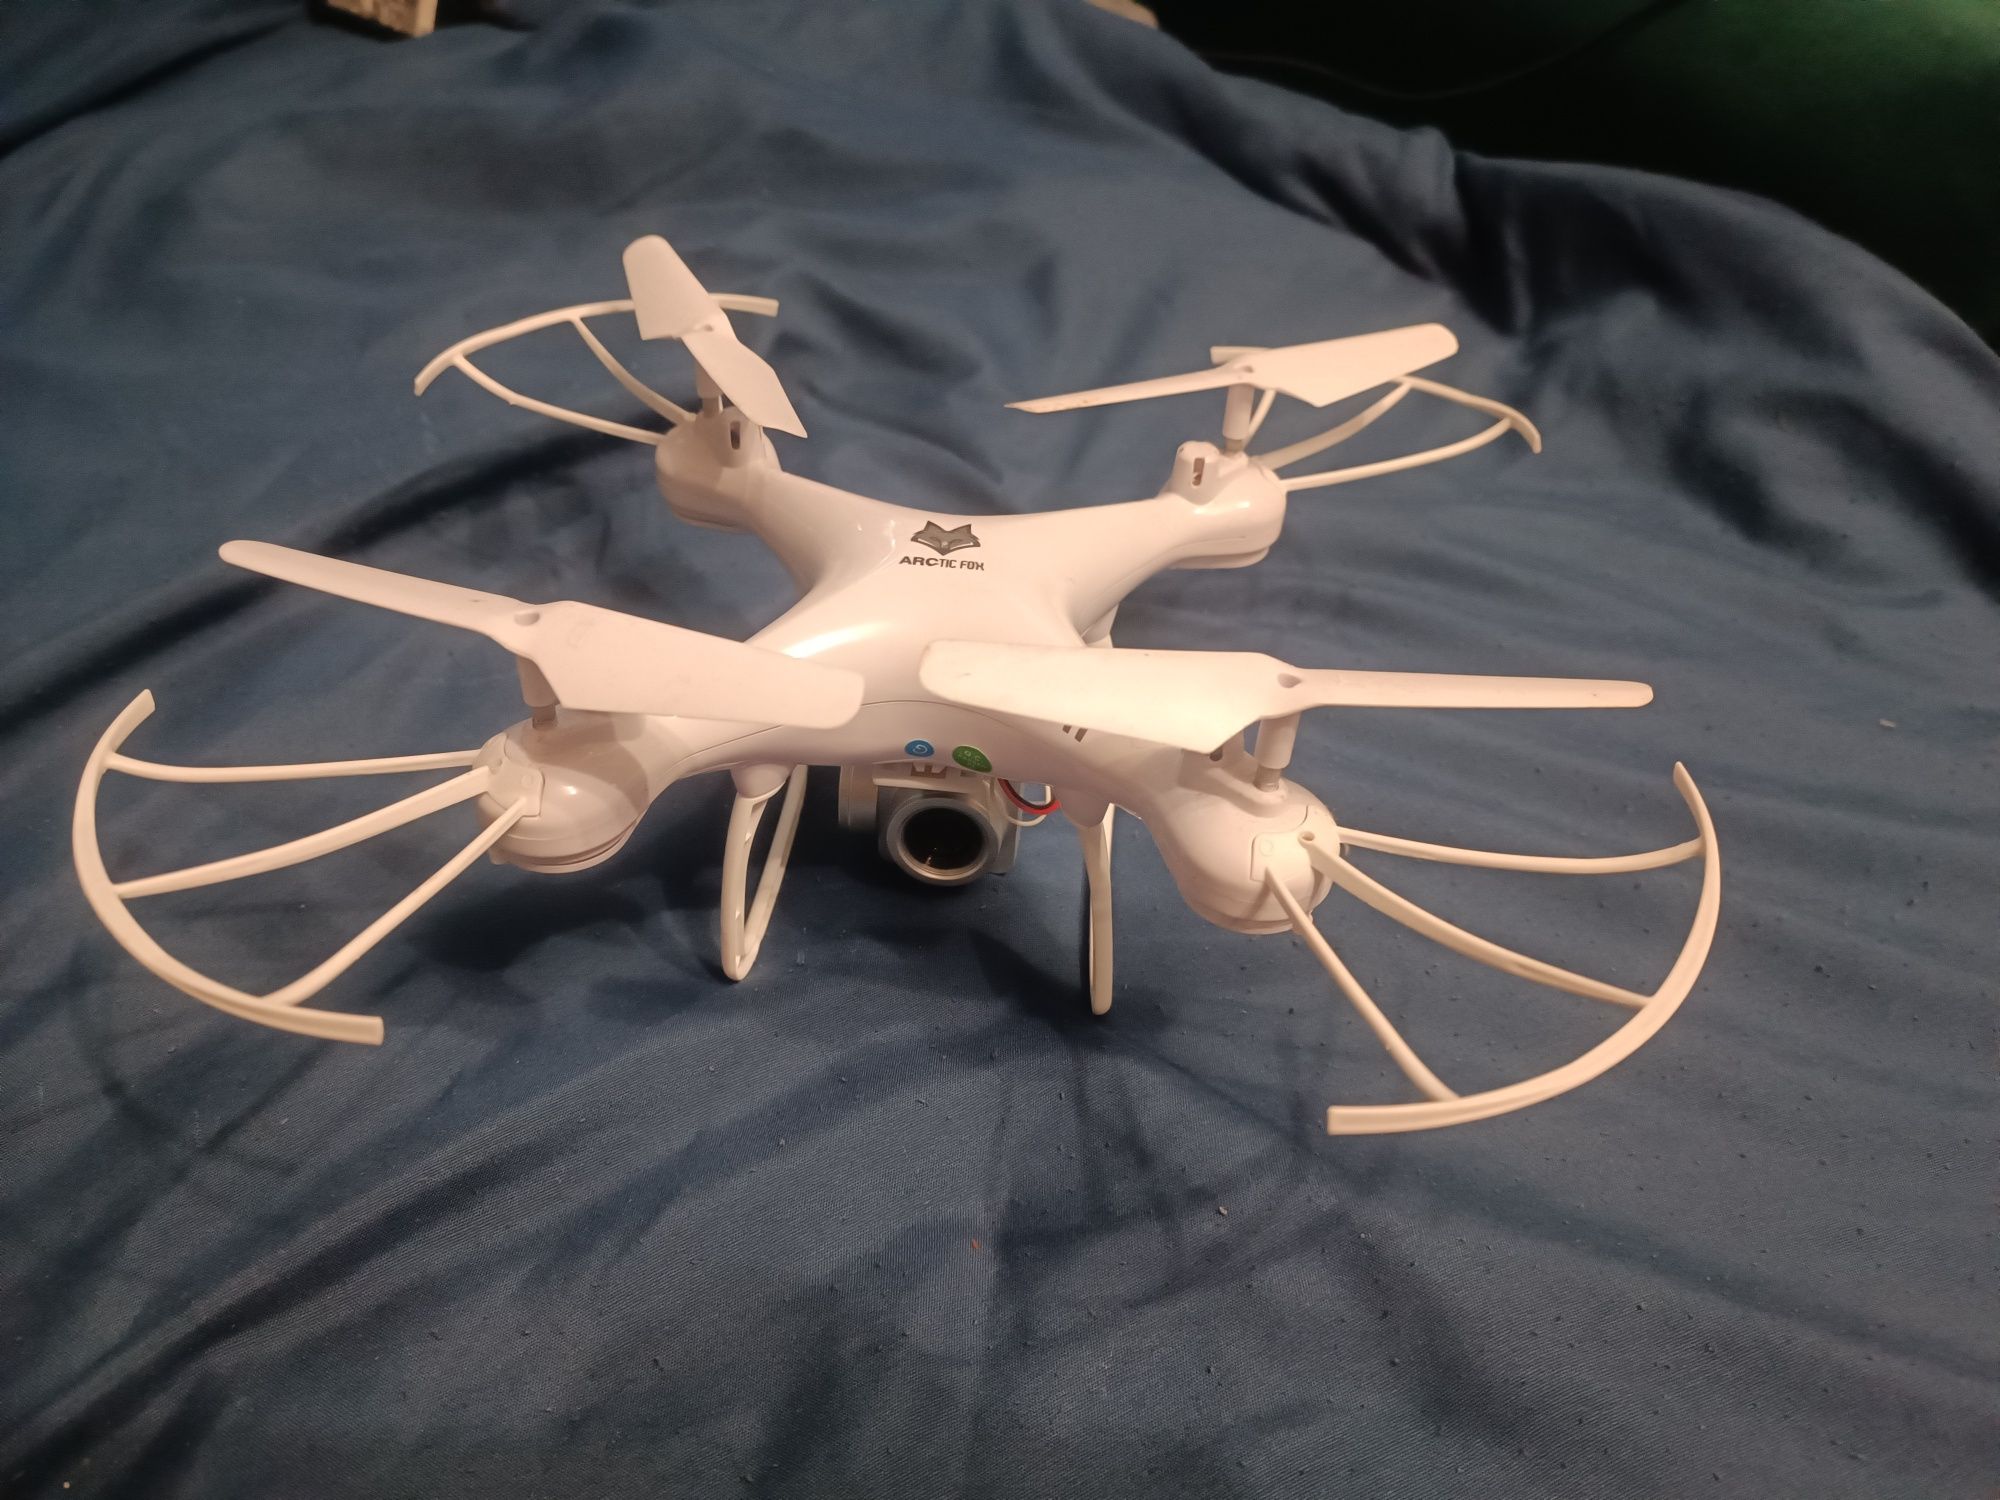 Drone Articfox T-12